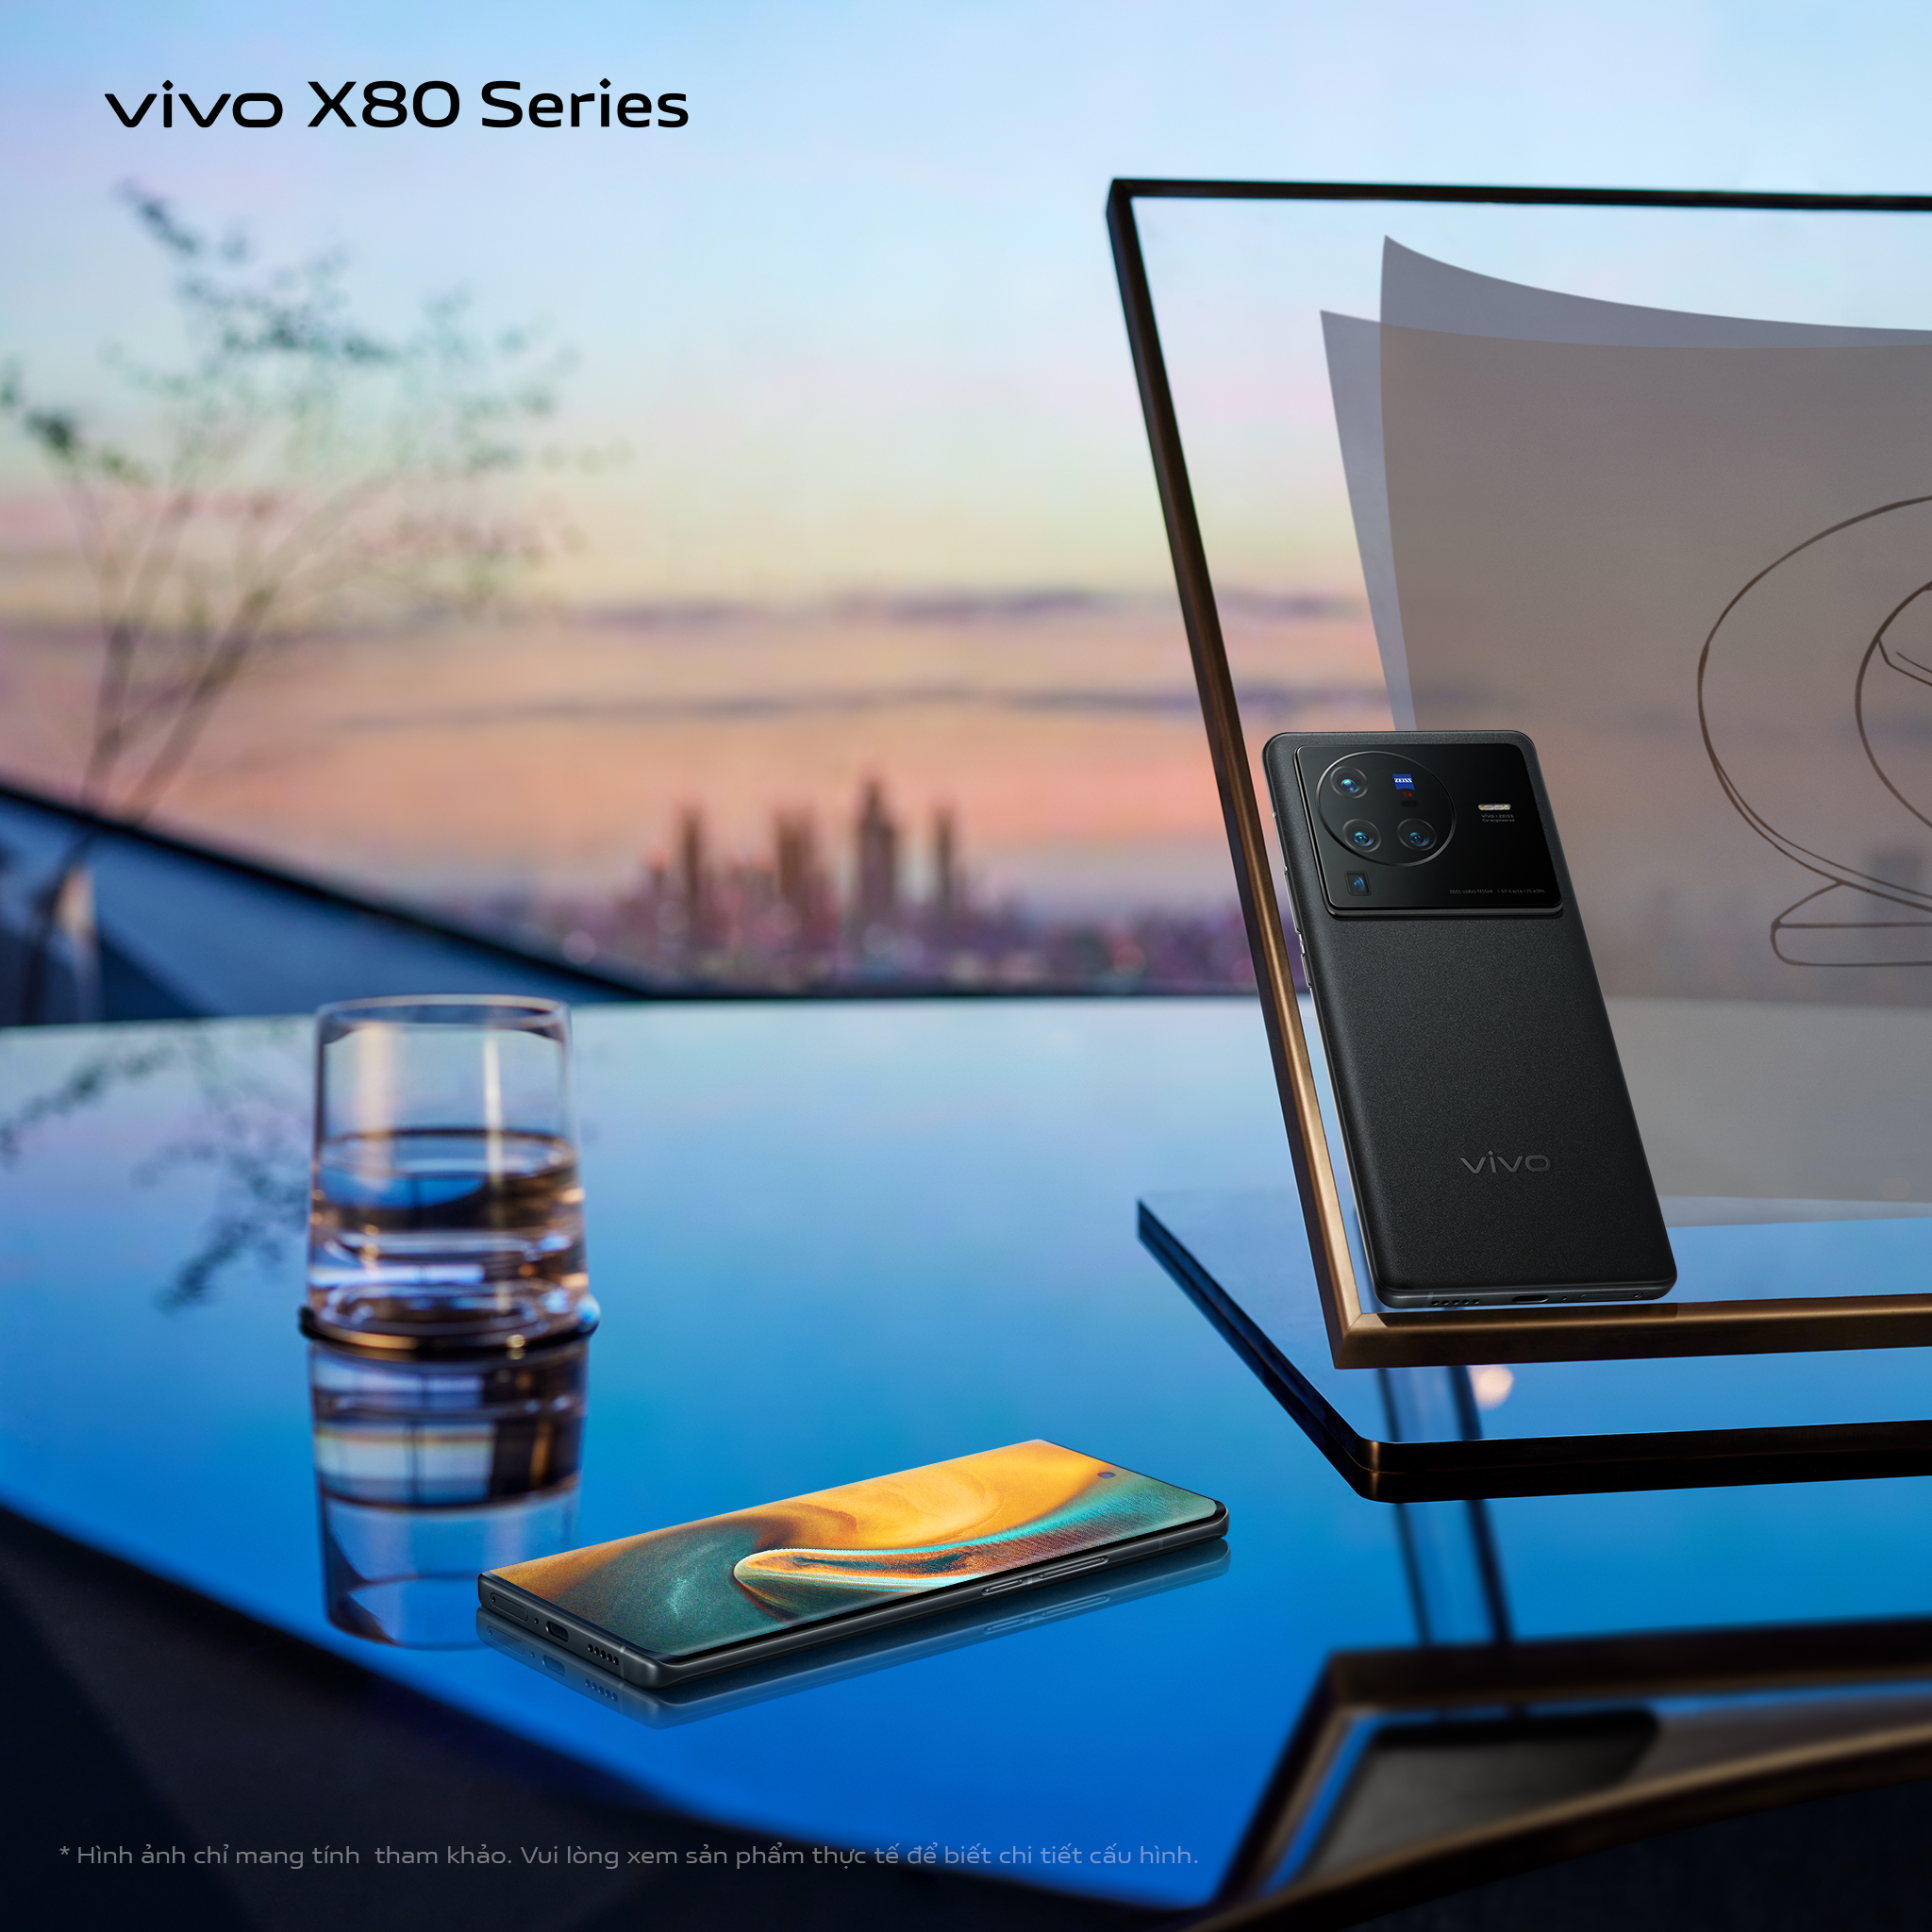 [CHÍNH THỨC] VIVO X80 series ra mắt: Hiệu năng bứt phá | Định hình chuẩn điện ảnh